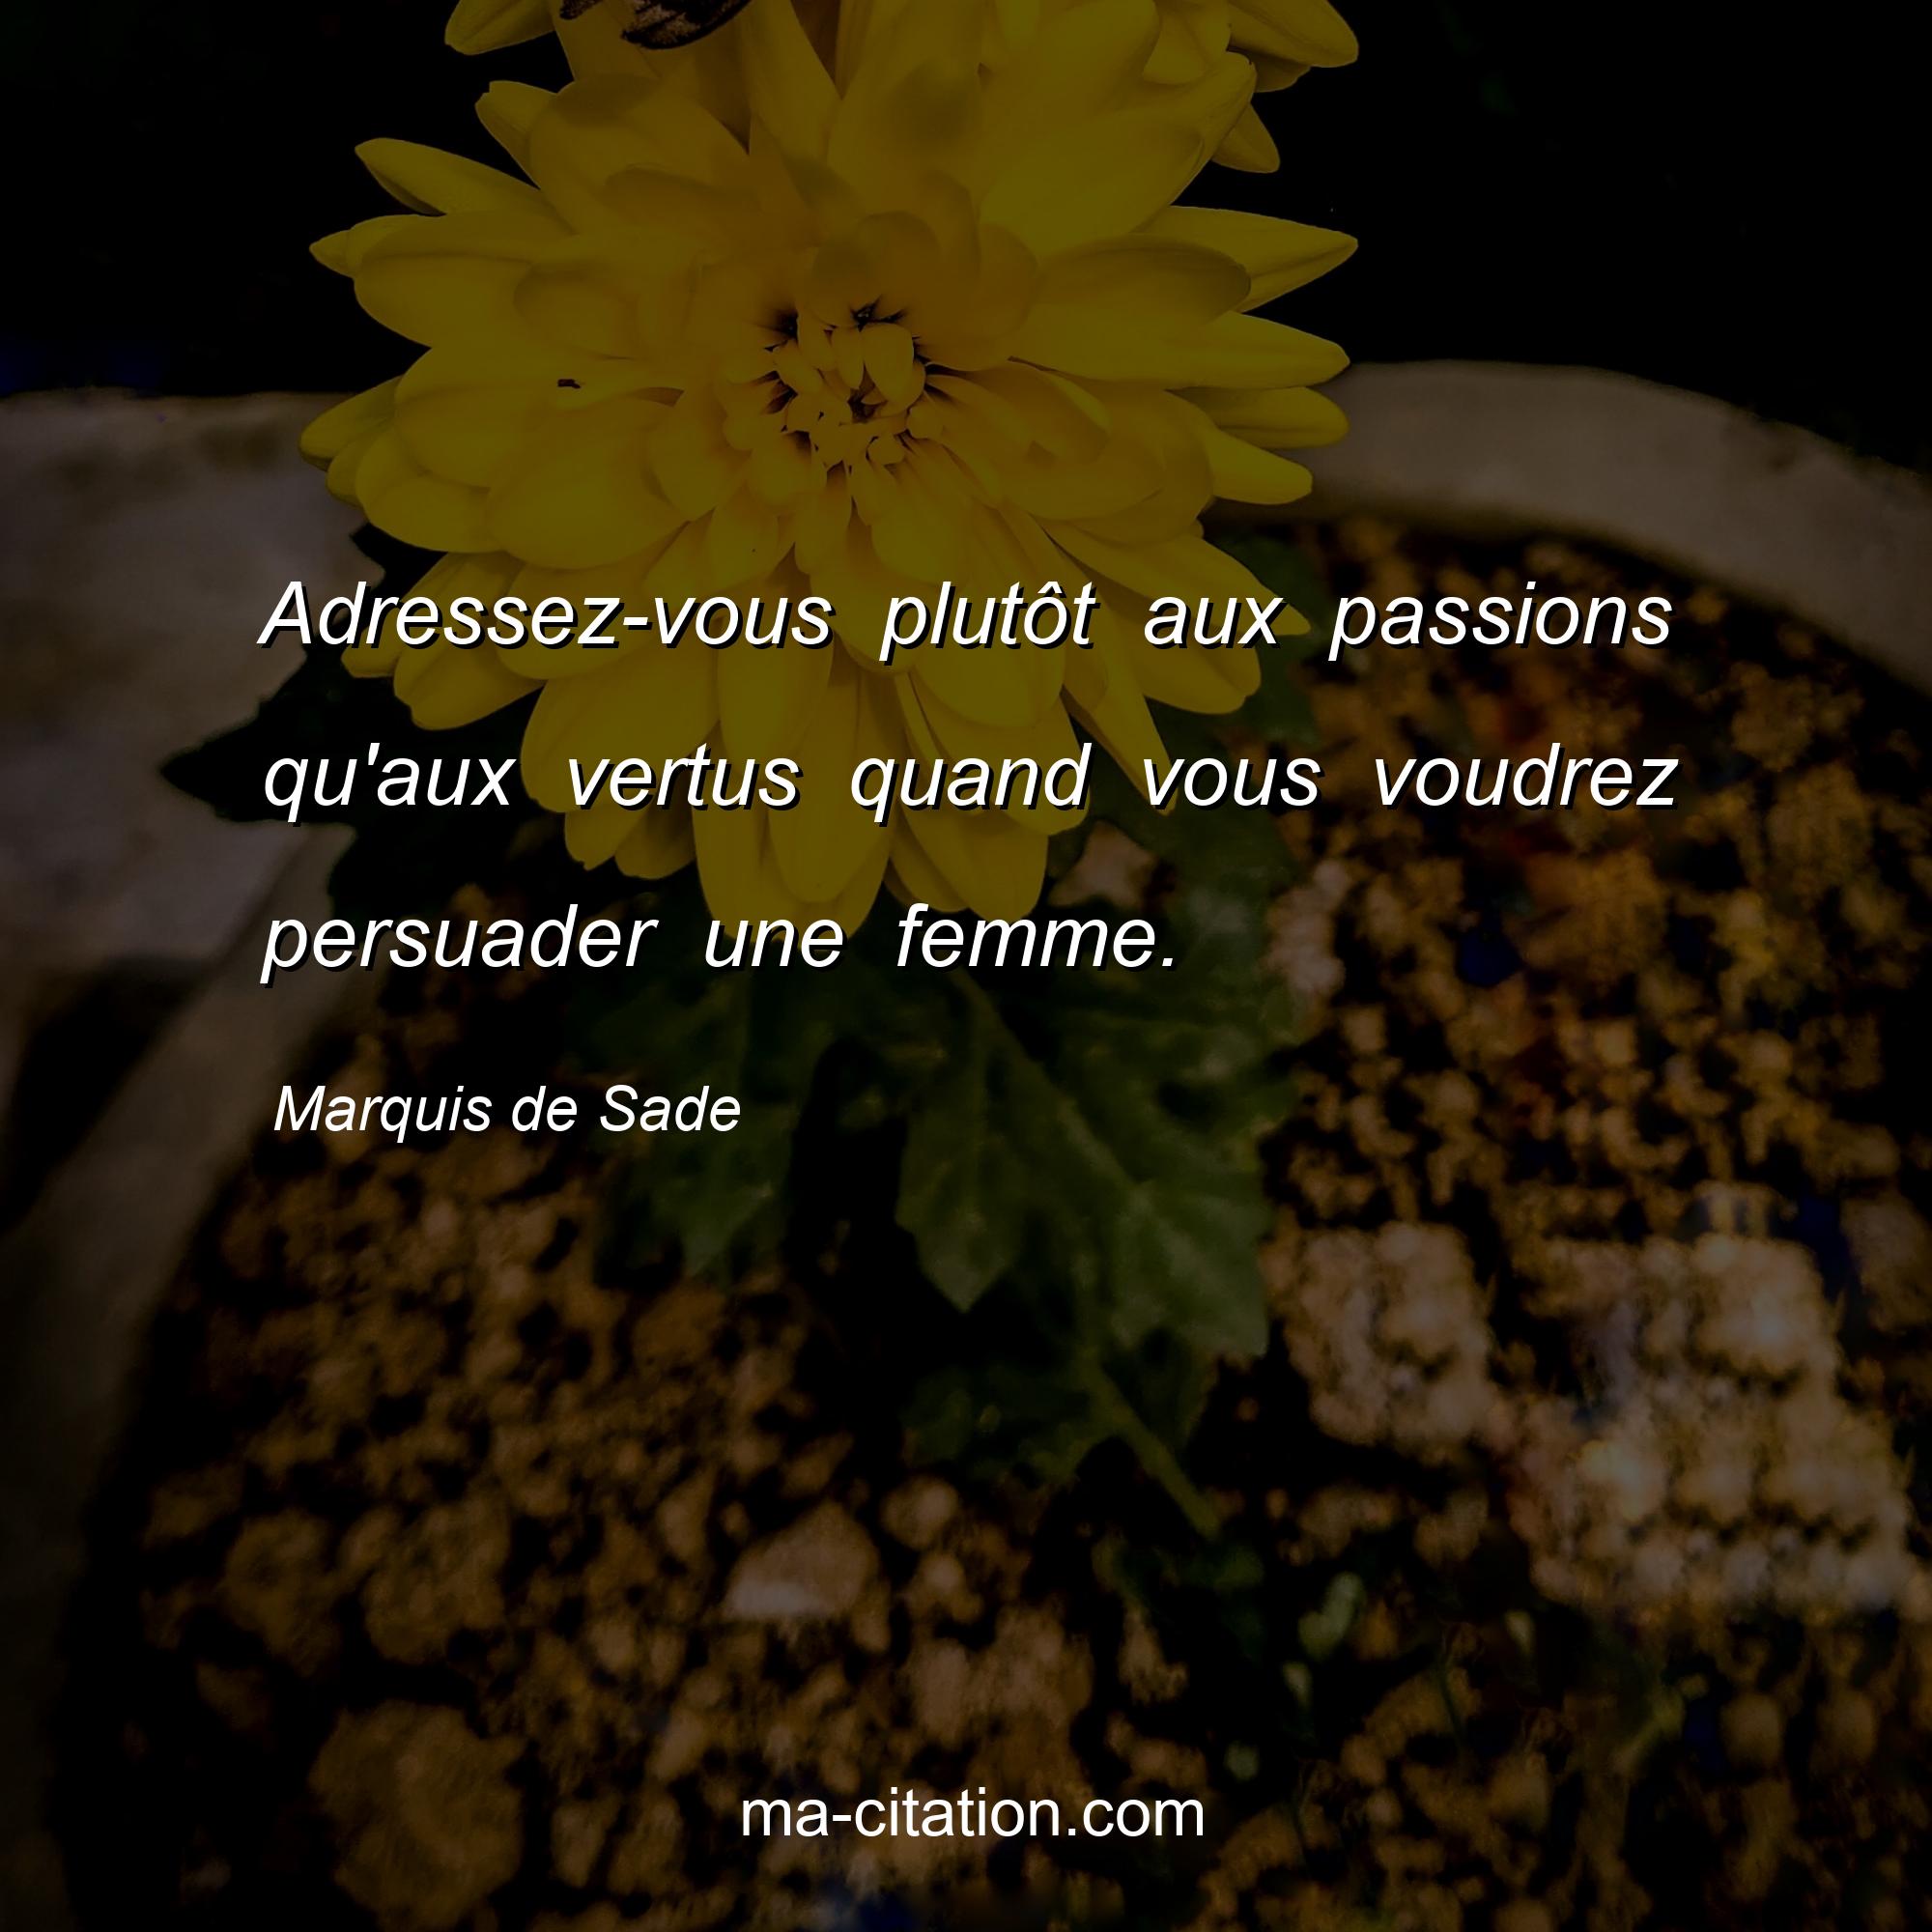 Marquis de Sade : Adressez-vous plutôt aux passions qu'aux vertus quand vous voudrez persuader une femme.